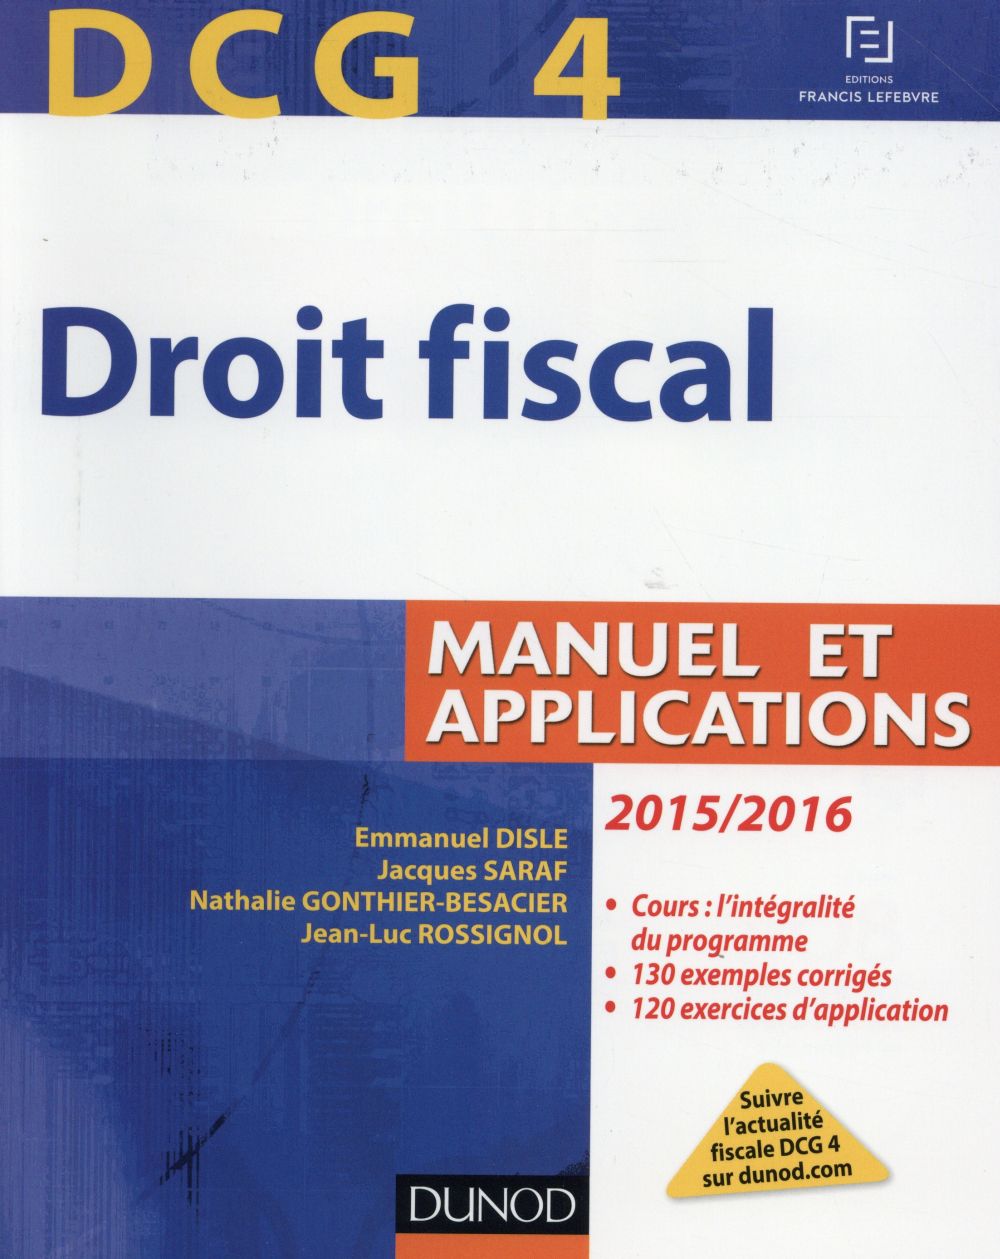 DCG 4 - DROIT FISCAL 2015/2016 - 9E EDITION - MANUEL ET APPLICATIONS